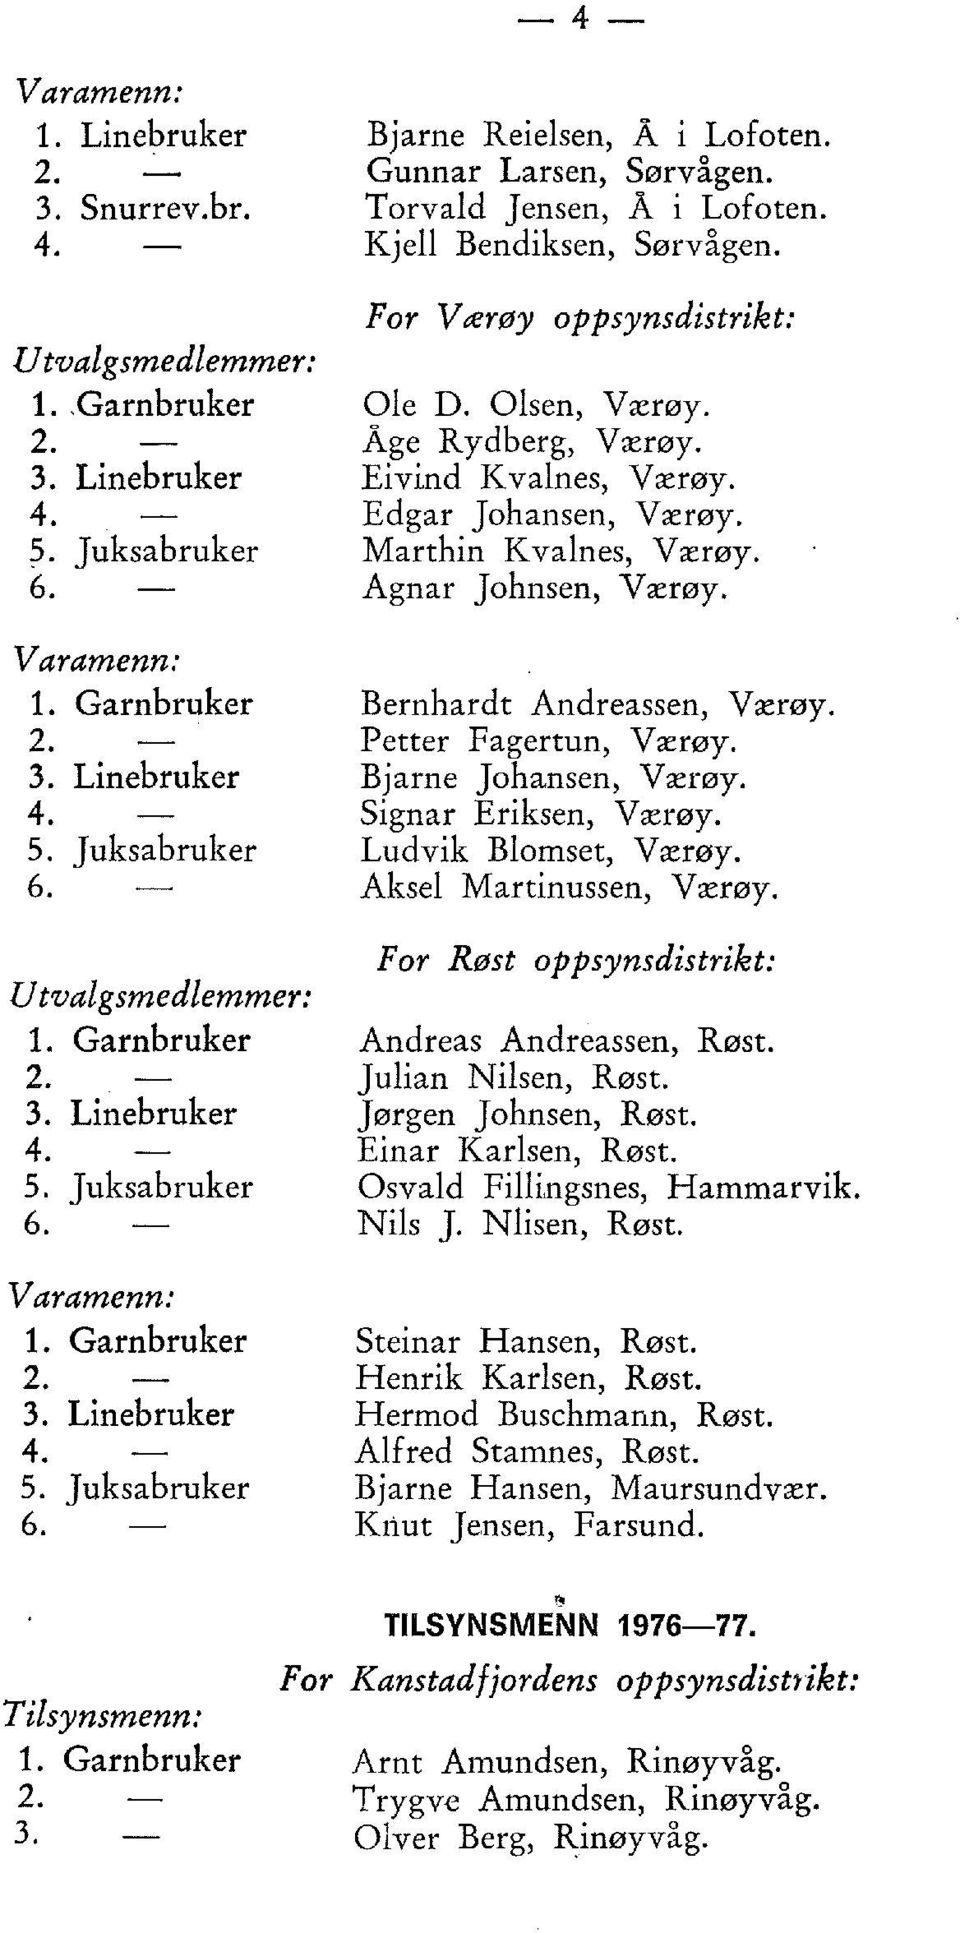 Eivind Kvalnes, Værøy. Edgar Johansen, Værøy. Marthin Kvalnes, Værøy. Agnar Johnsen, Værøy. Bernhardt Andreassen, Værøy. Petter Fagertun, Værøy. Bjarne Johansen, Værøy. Sign ar Eriksen, Værøy.